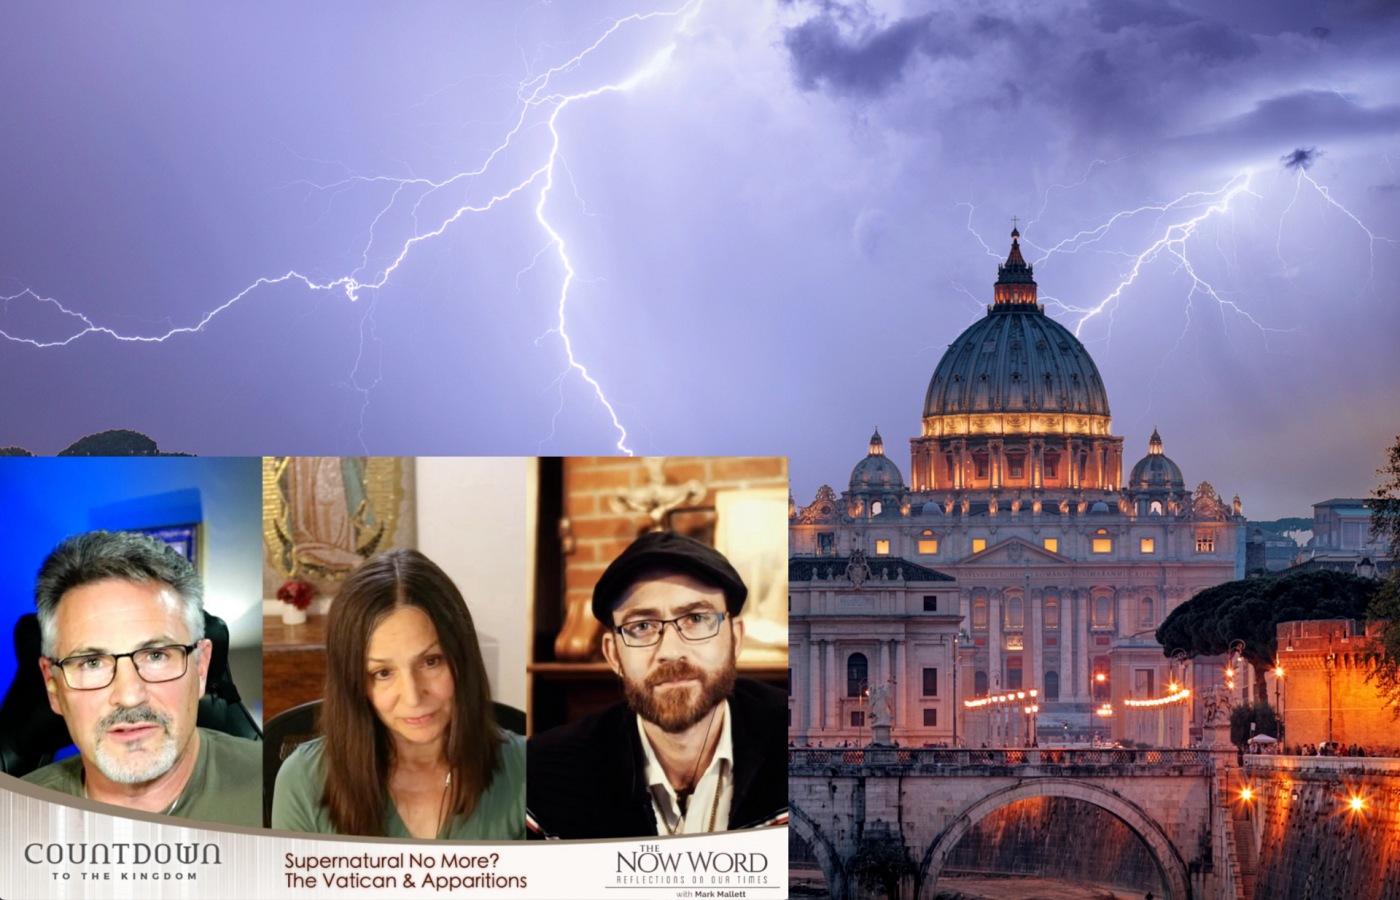 Vatican & Apparitions…